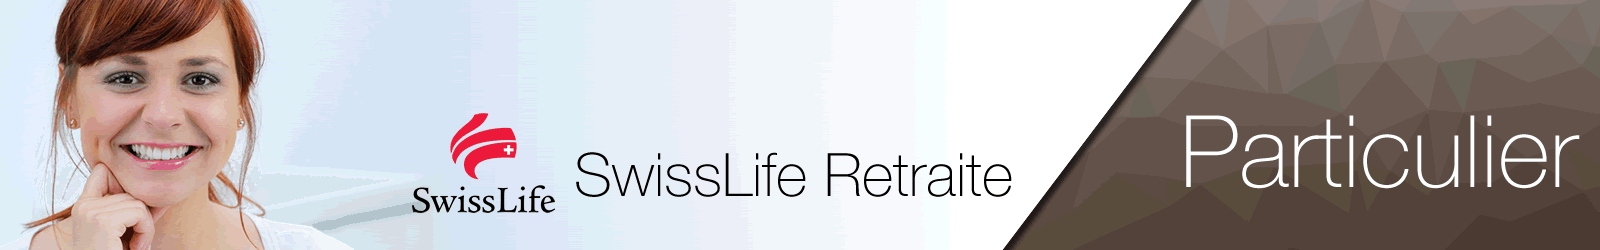 SwissLife RetraiteAssurance complémentaire retraite